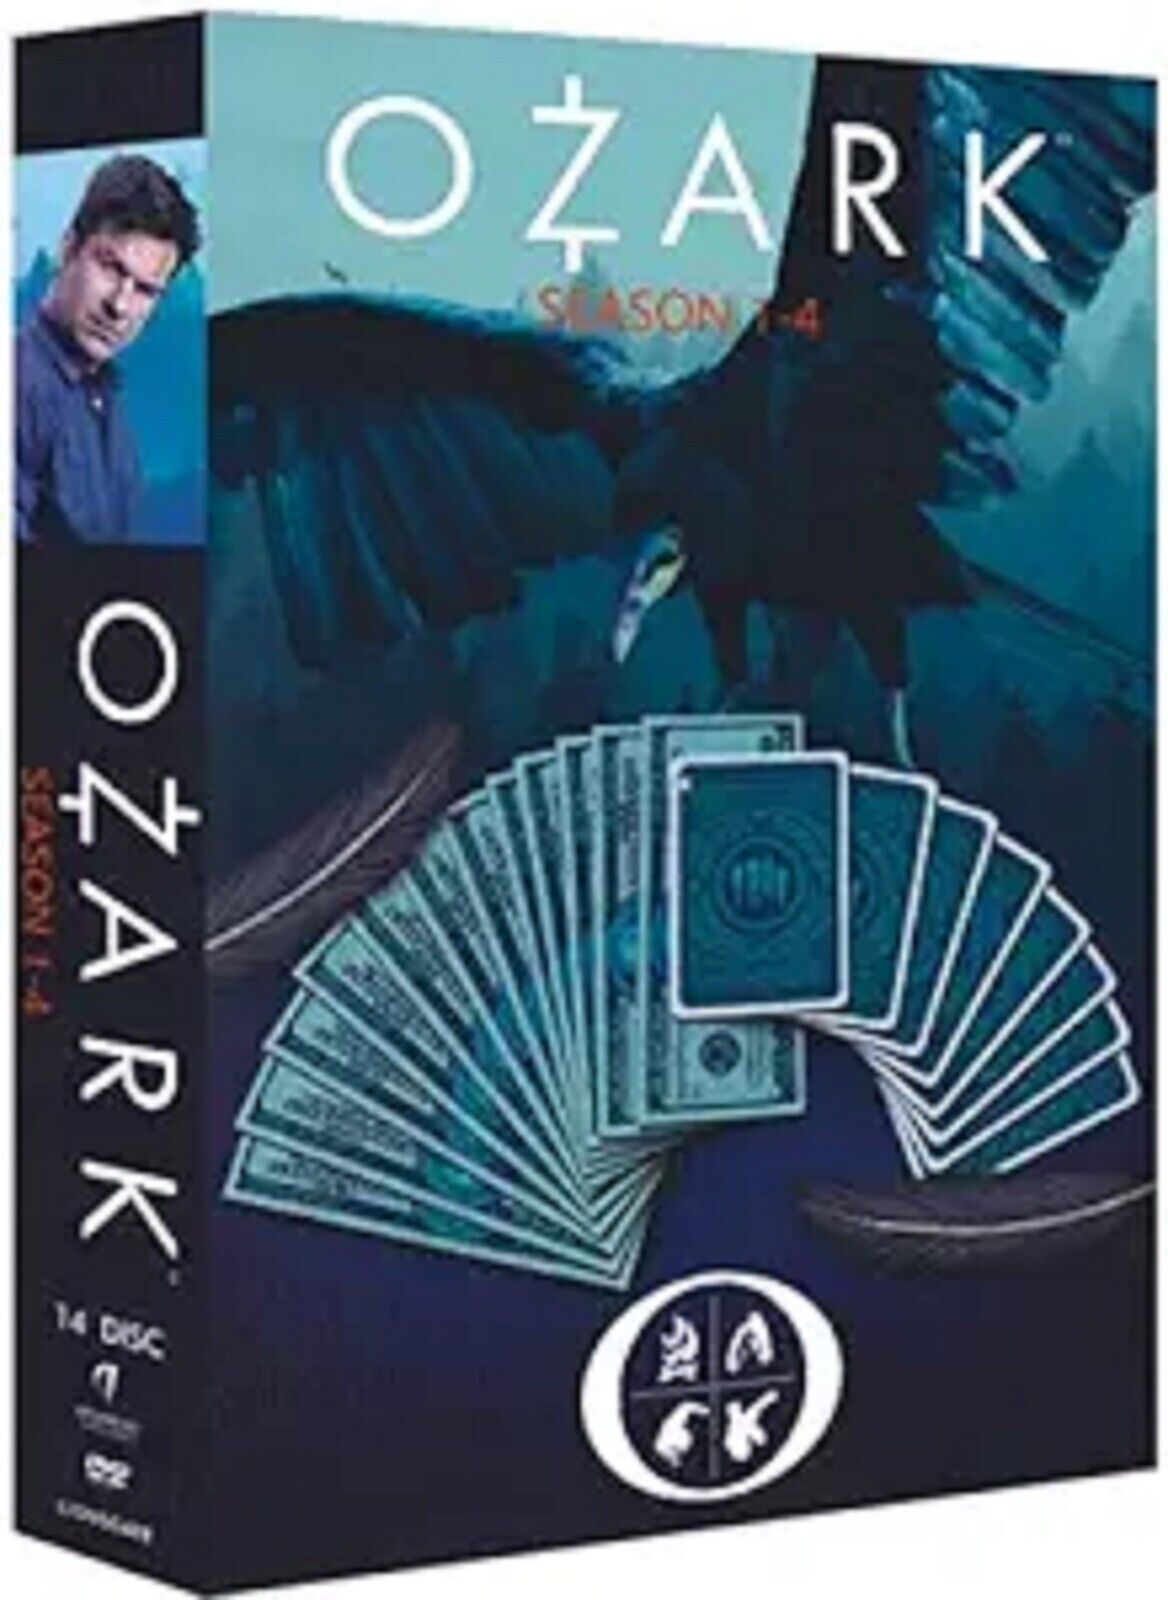 Ozark: The Complete Series, Season 1-4 on DVD, TV-Series, Box-Set